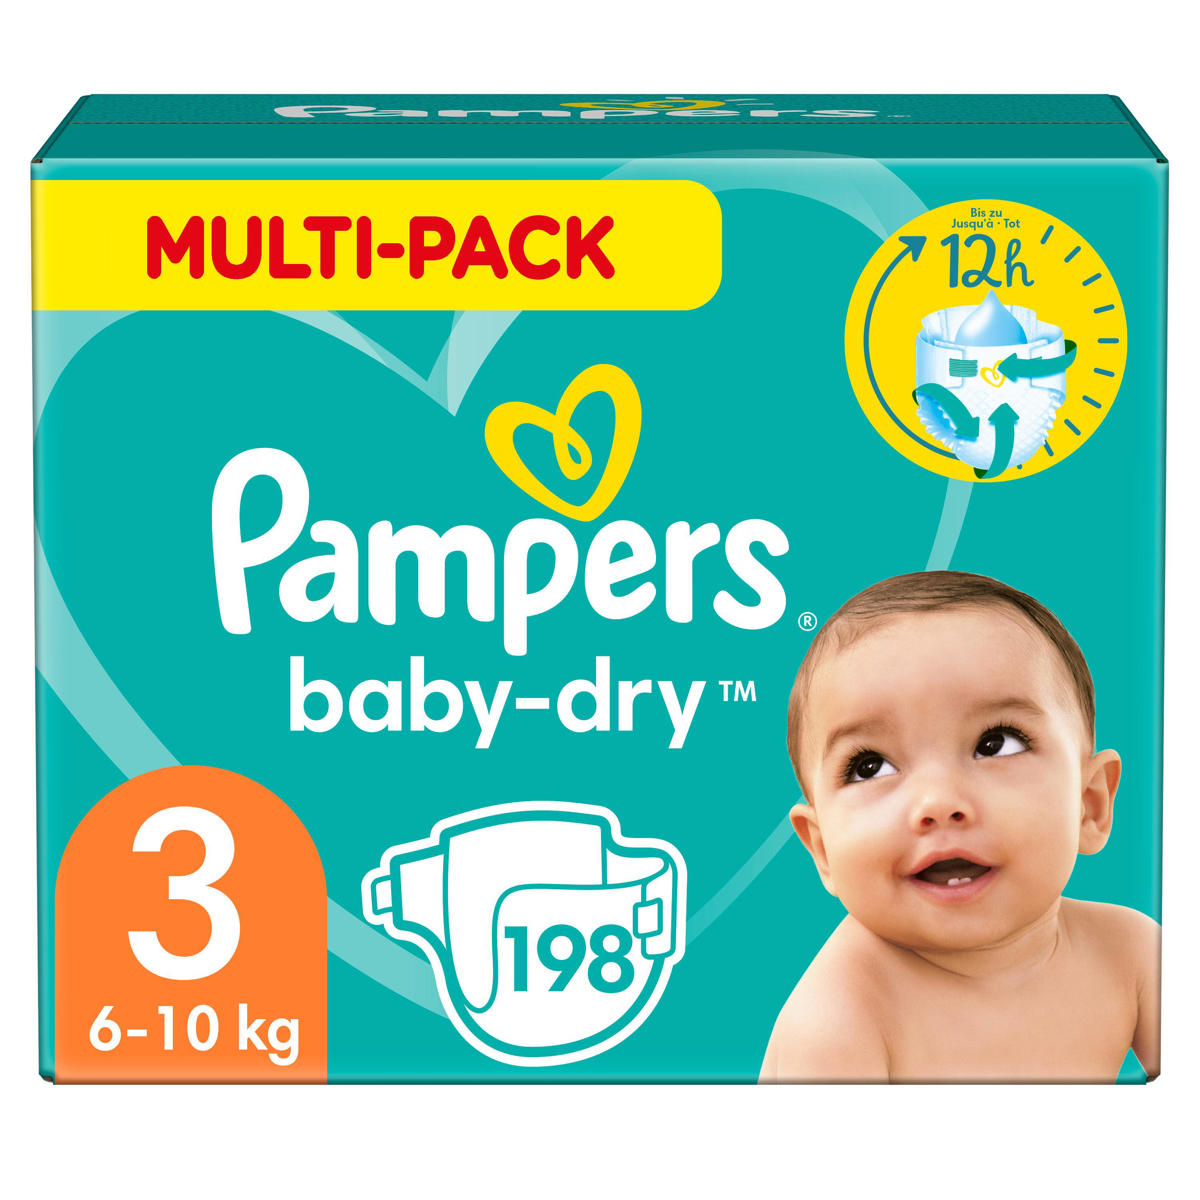 naakt Pijnboom schildpad Pampers Baby-Dry Luiers - Maat 3 (6-10 kg) - 198 stuks - Multi-Pack |  wehkamp